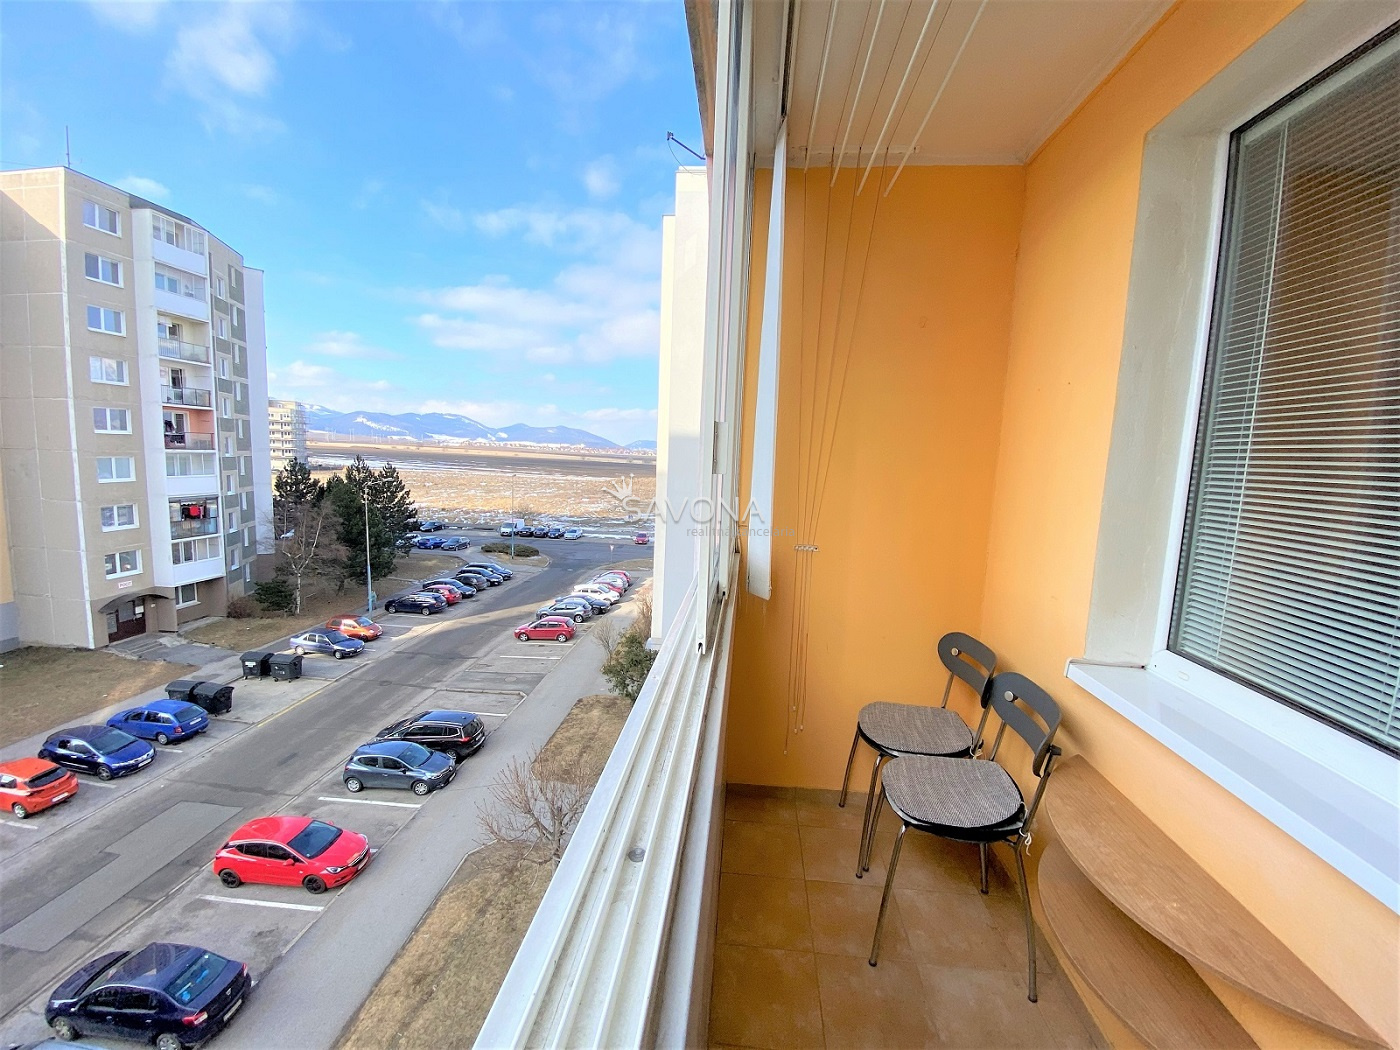 PREDANÝ - 1 izbový byt s balkónom + komplet zariadenie -  37 m2, ul. Podjavorinskej, Poprad